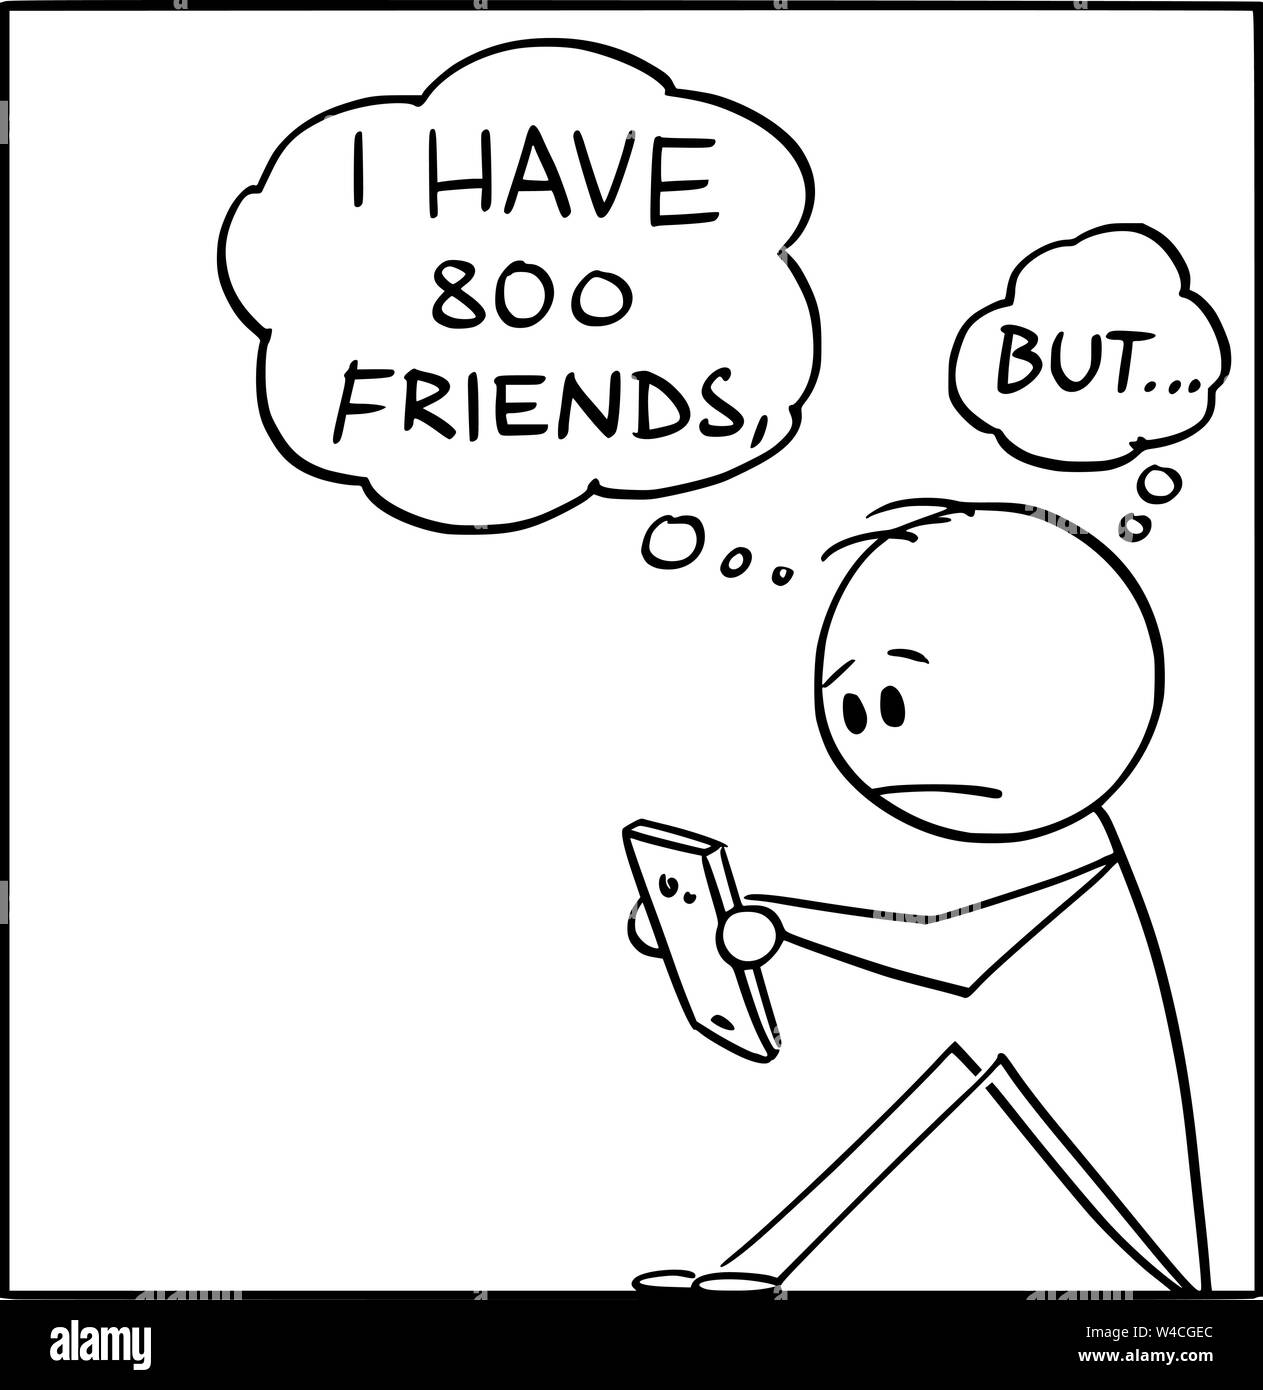 Vektor cartoon Strichmännchen Zeichnen konzeptionelle Darstellung der einsame Mann mit vielen virtuellen Freunden über soziale Netzwerke im Internet, aber alleine ohne echte Freunde. Stock Vektor